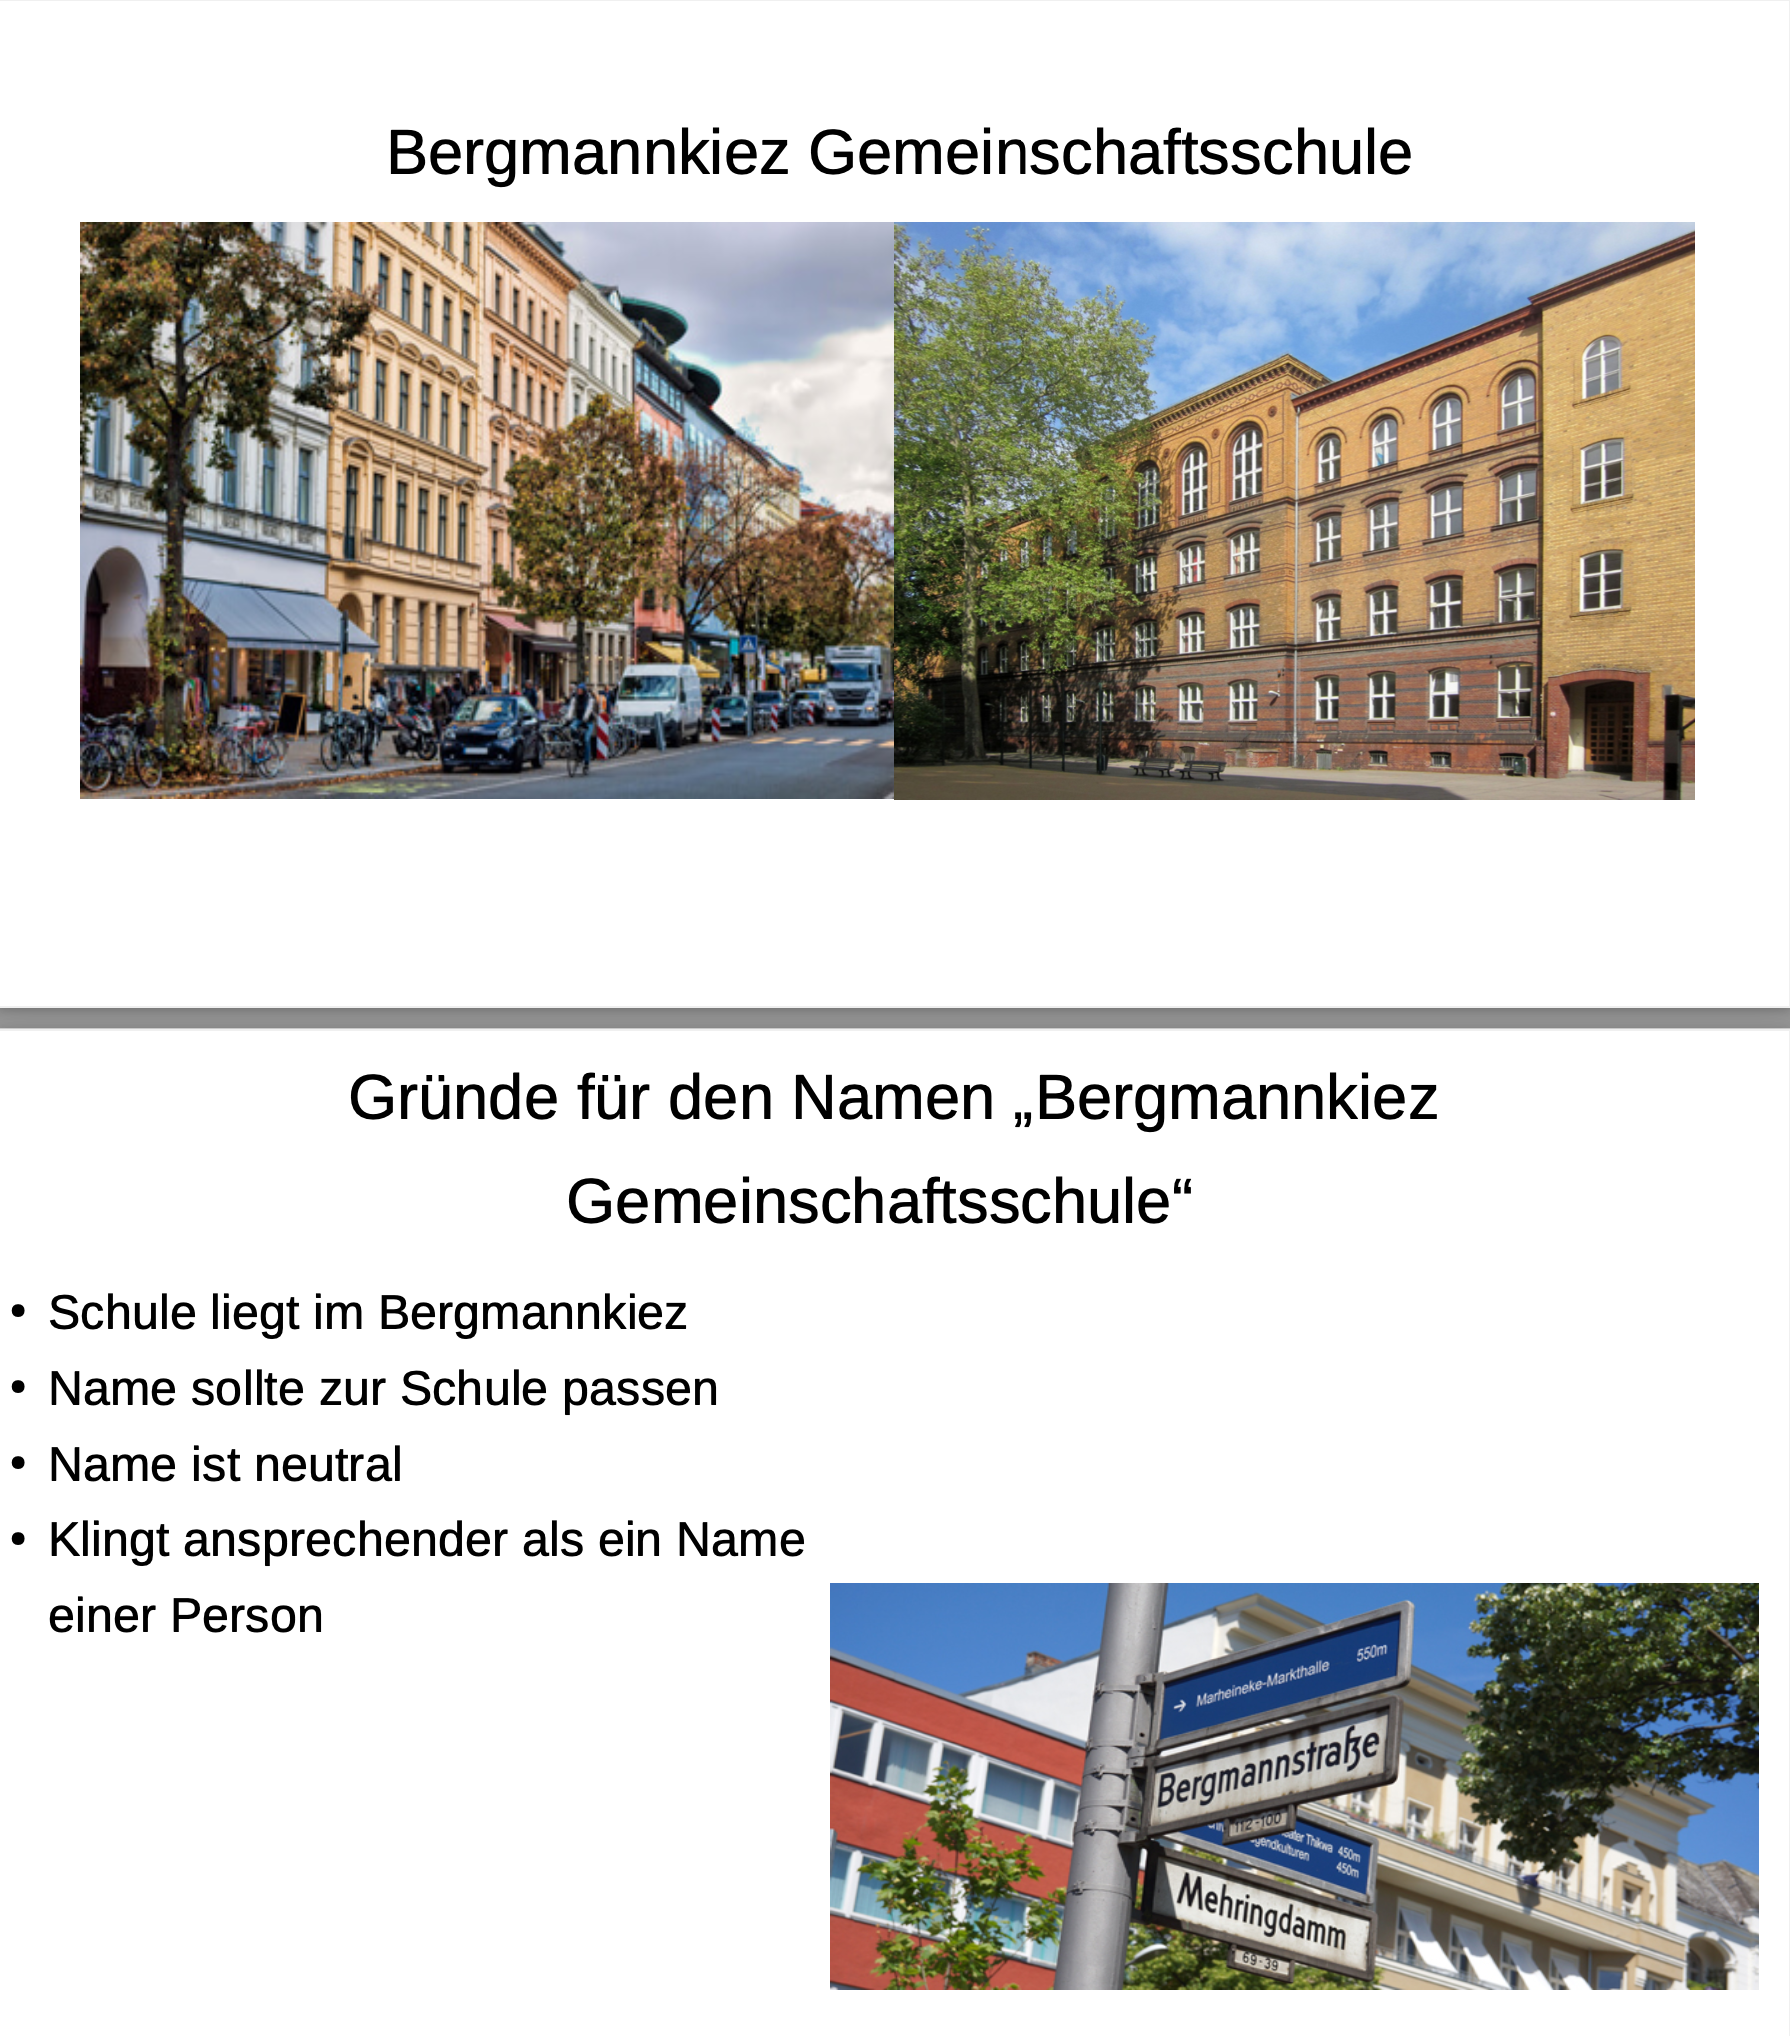 Bergmannkiez-Gemeinschaftsschule-10.4-Emma-Lui-Johanna